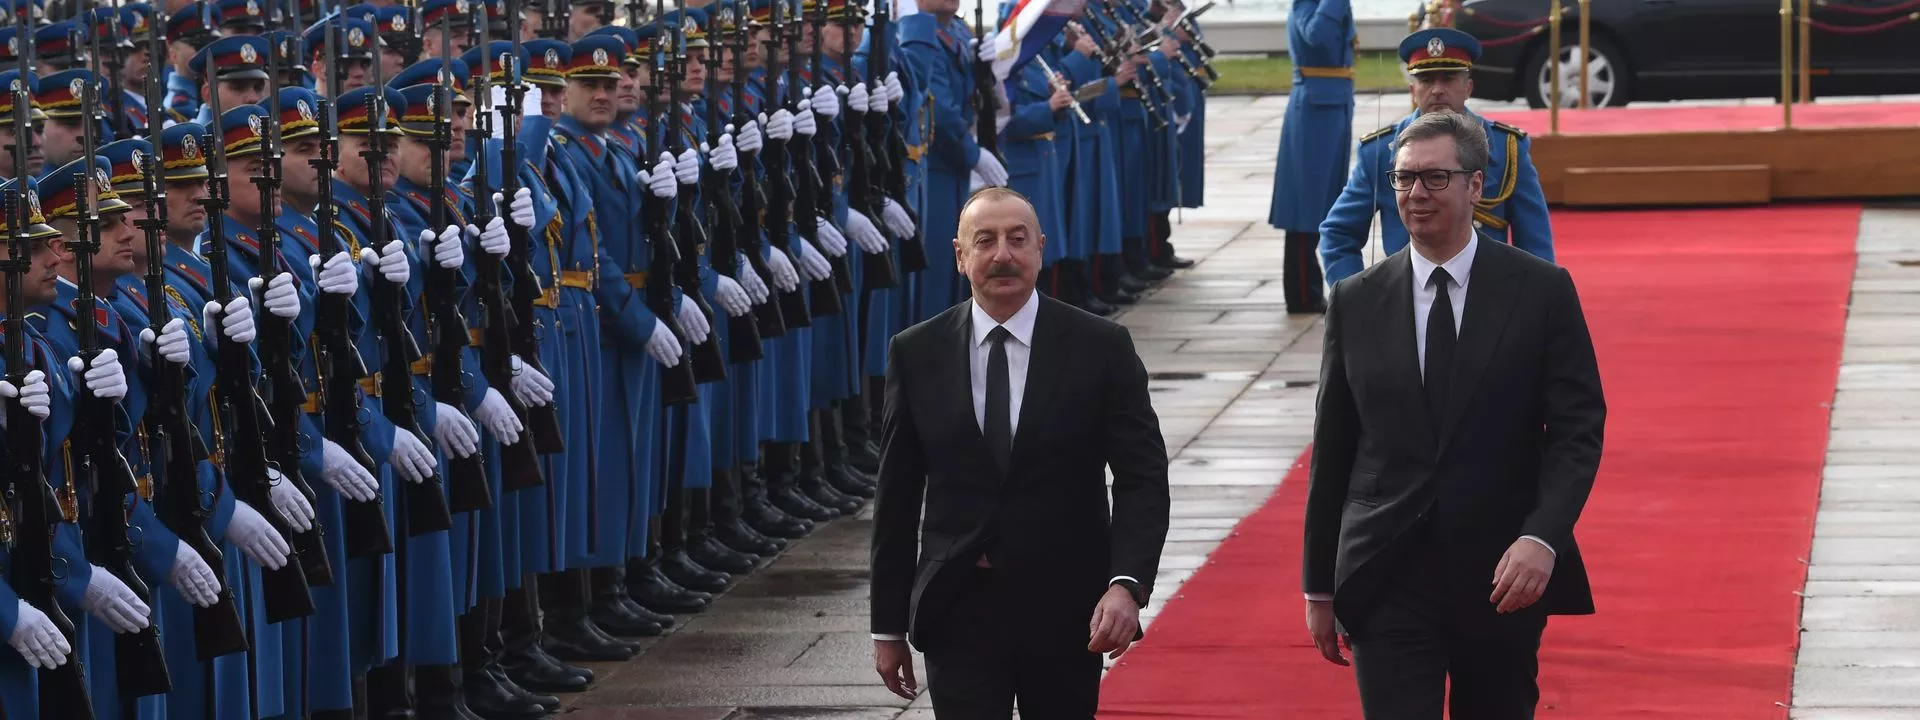 Сербия в споре вокруг Карабаха встала на сторону Азербайджана